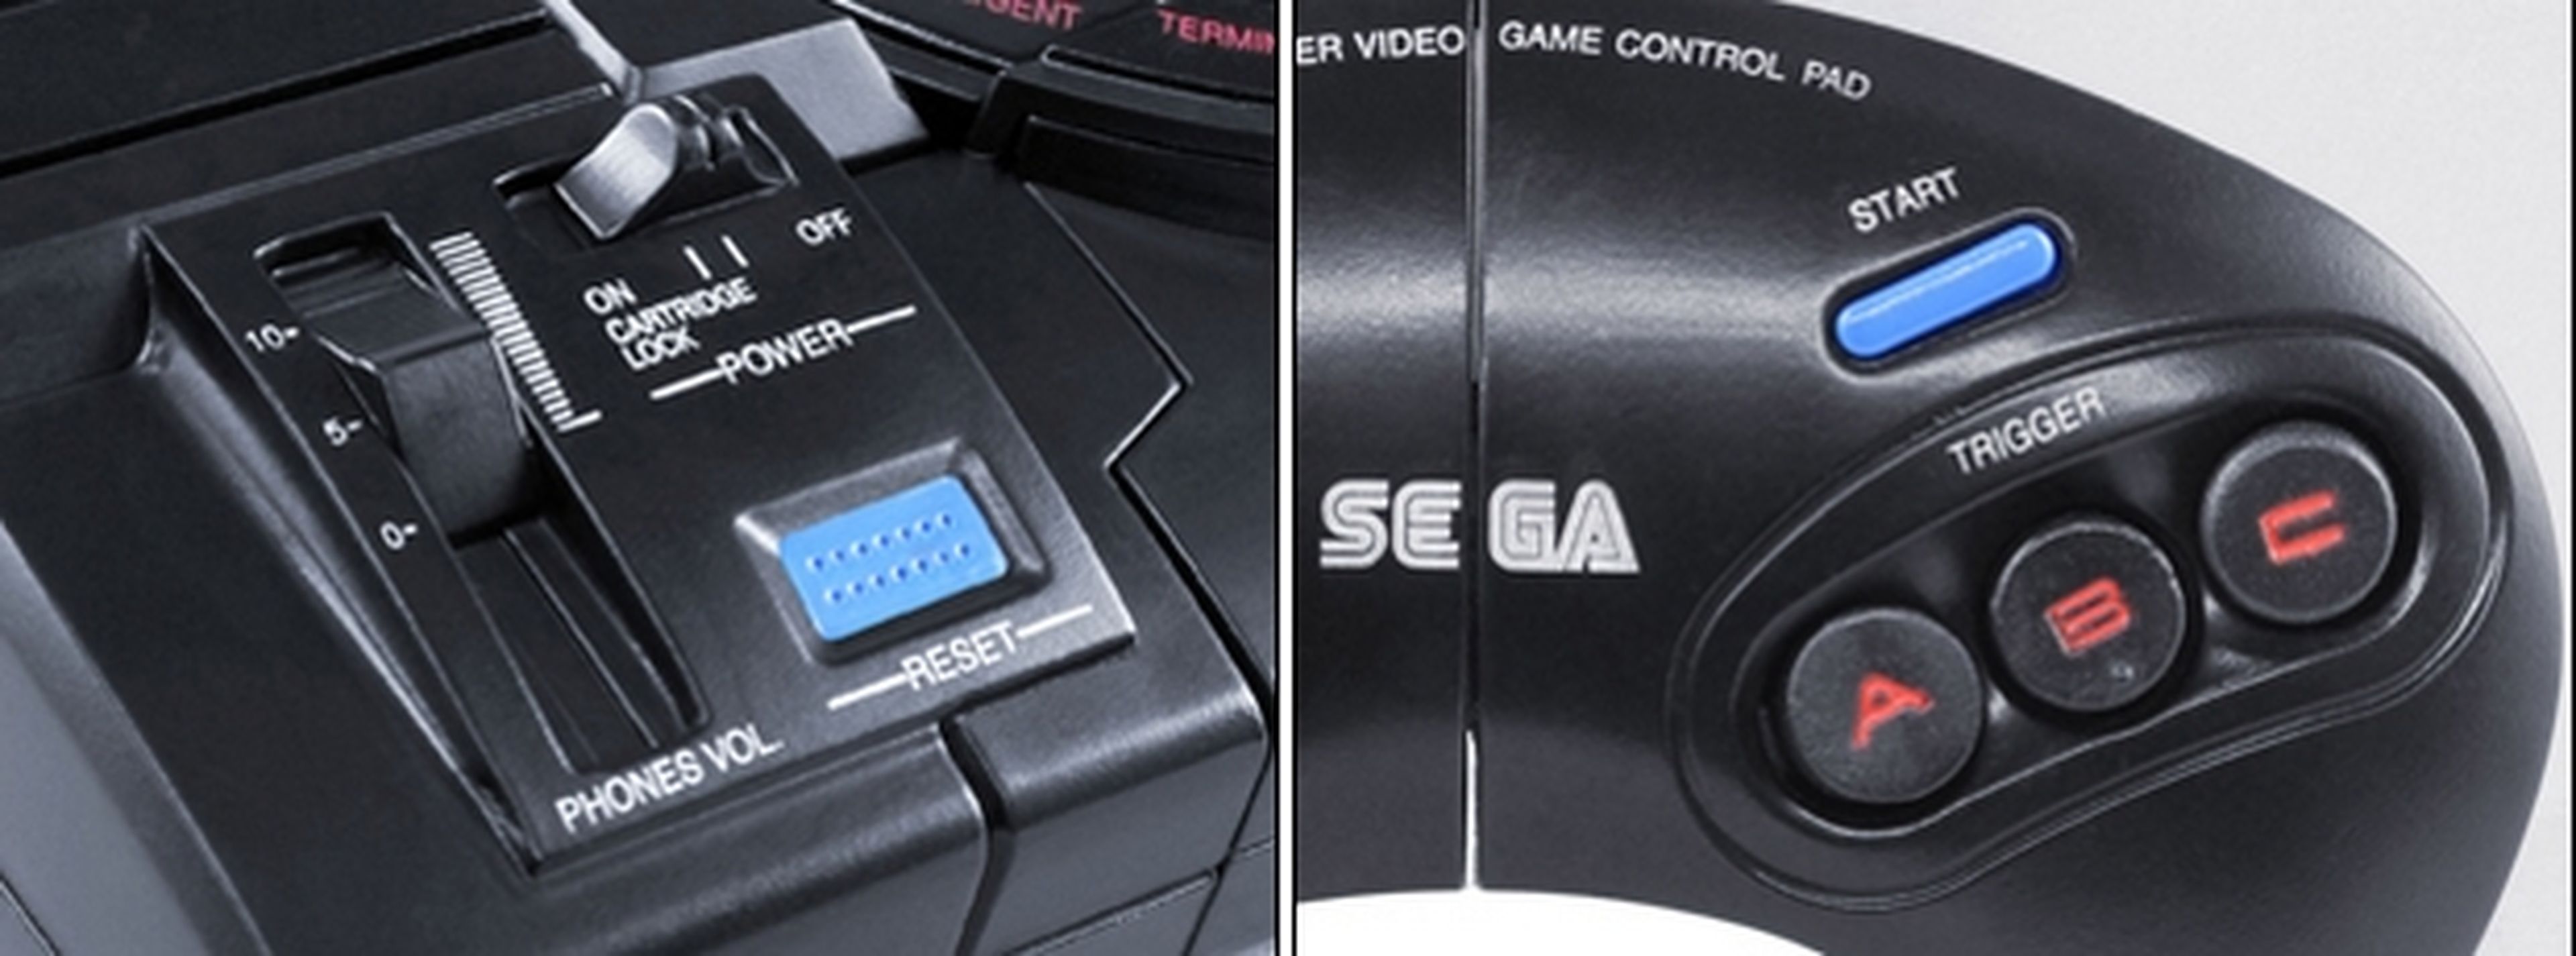 Transformers consola Sega Megadrive